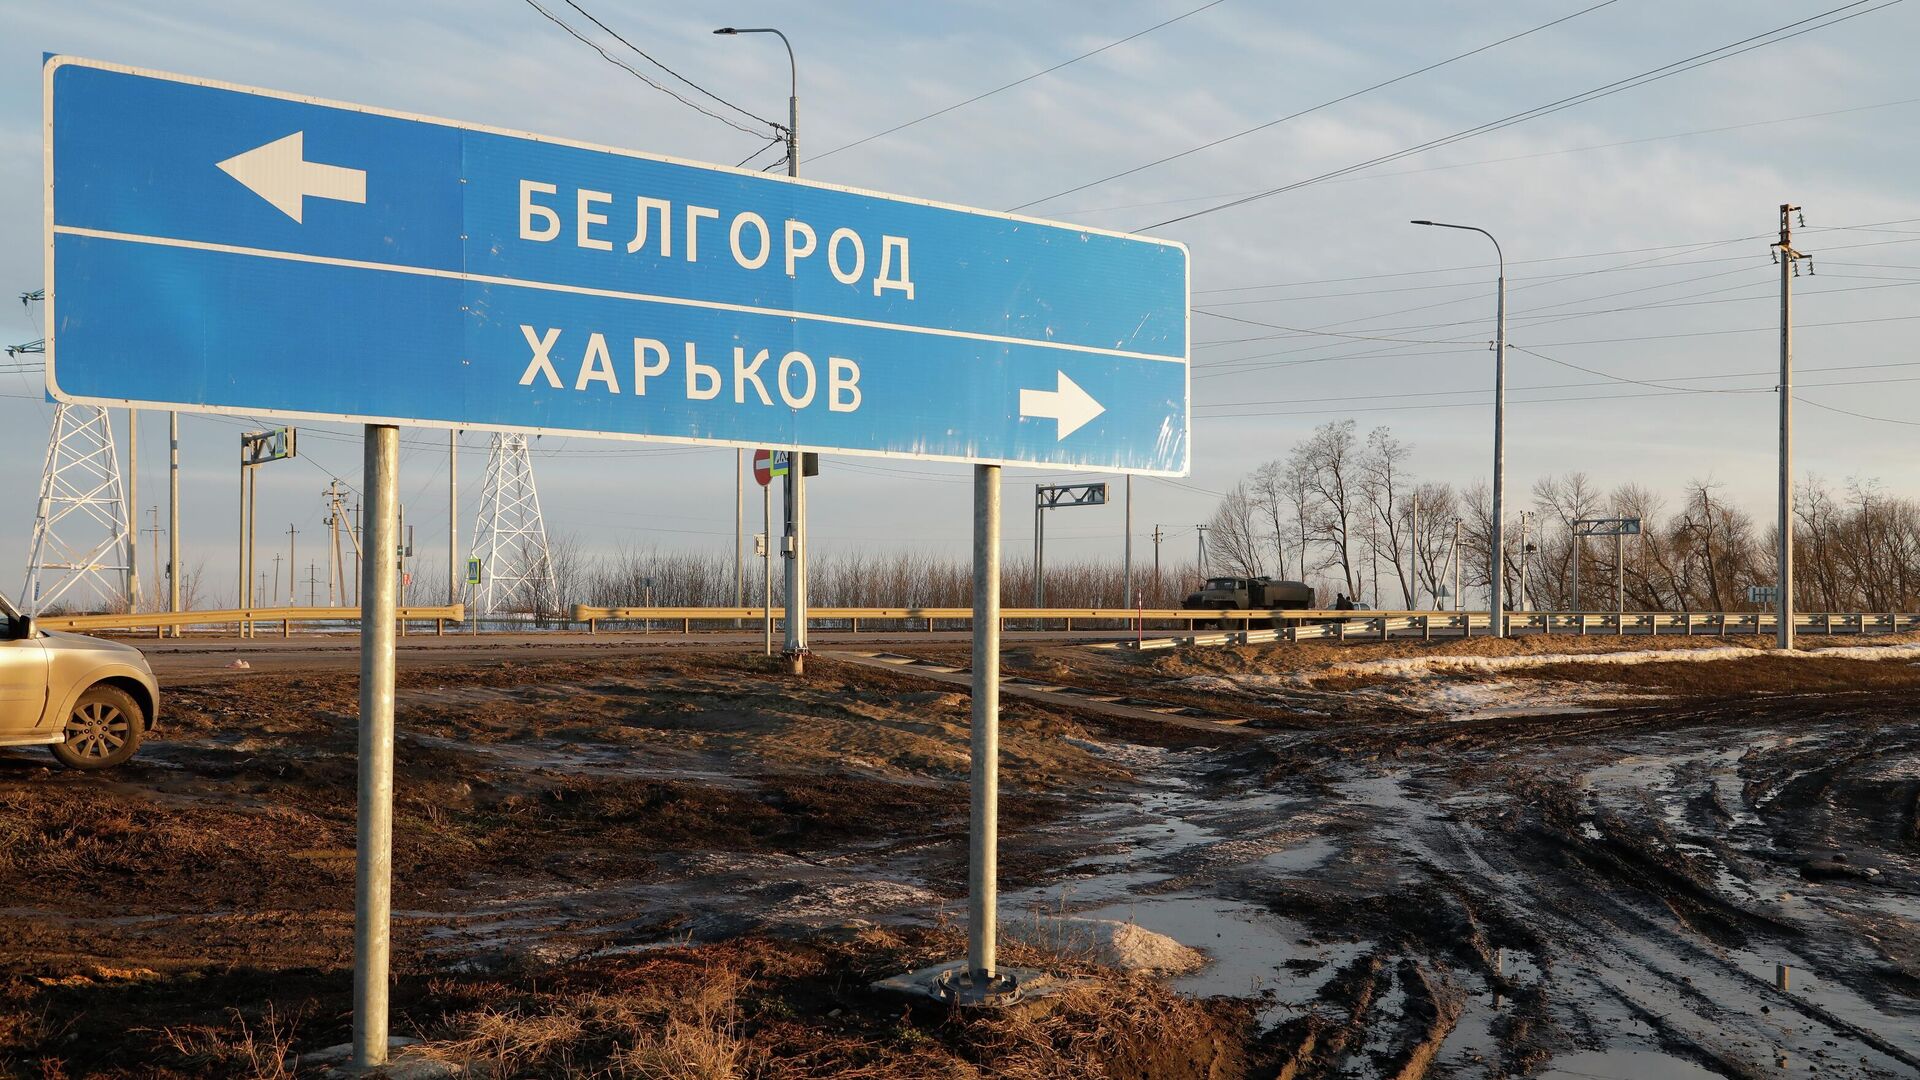 Харьков: Горожане с тревогой ждут приближения фронта